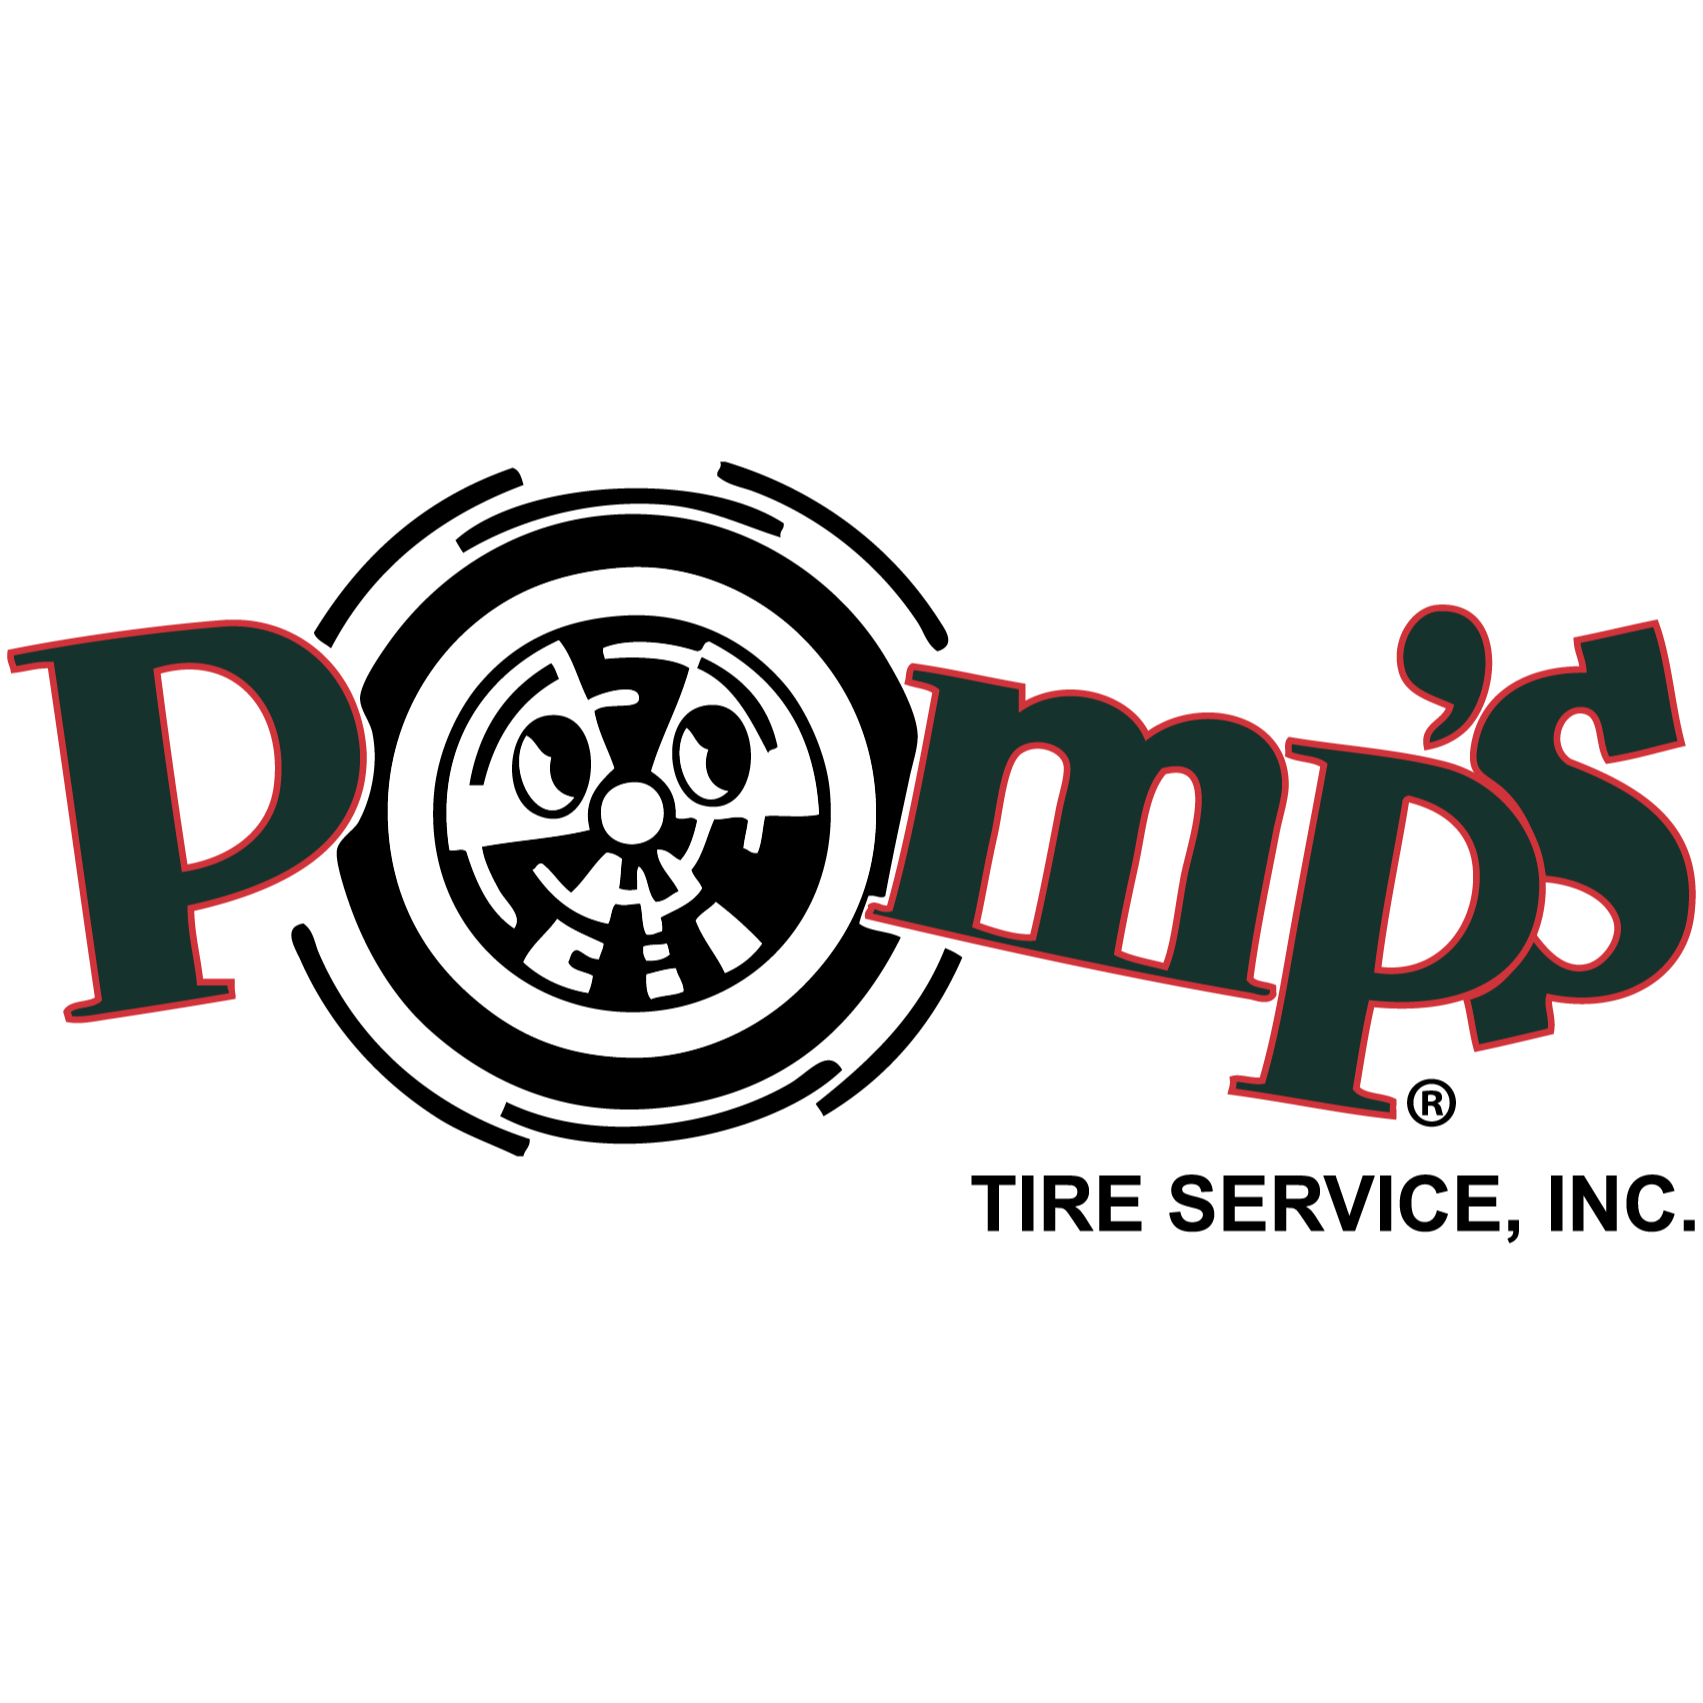 Pomp's Tire Service - Billings, MT 59101 - (406)969-4530 | ShowMeLocal.com